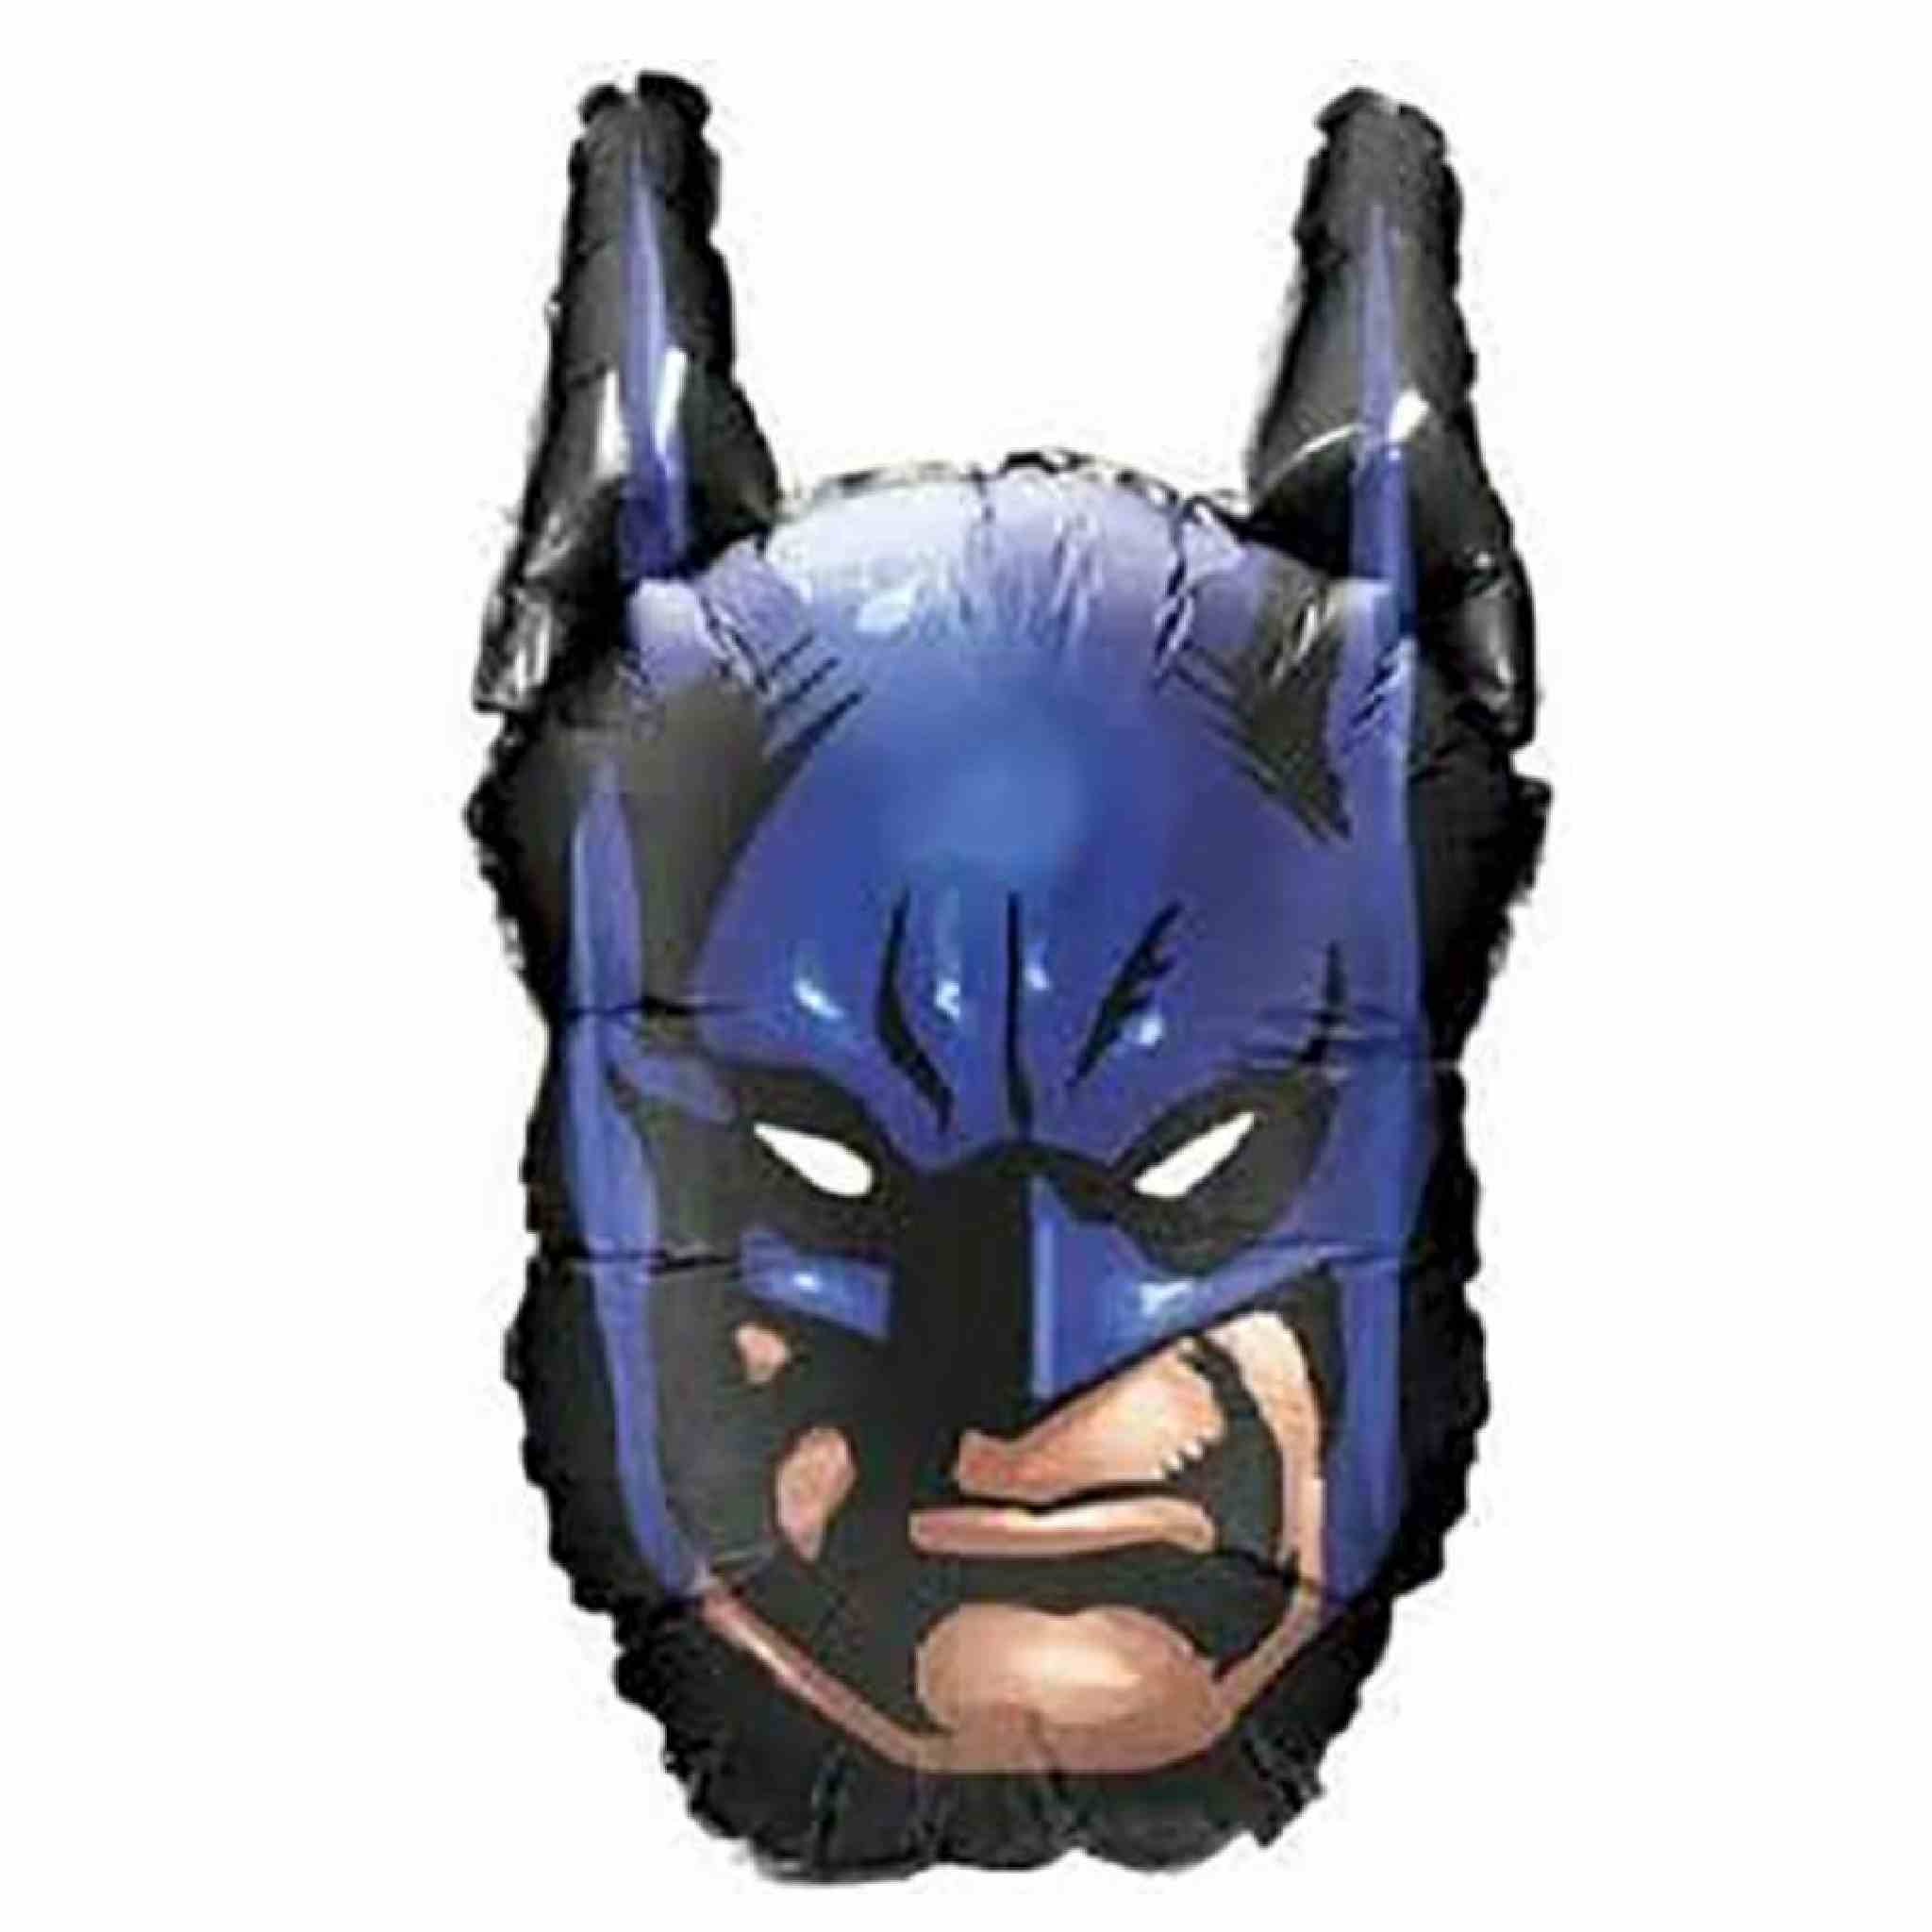 Ballon masque Batman